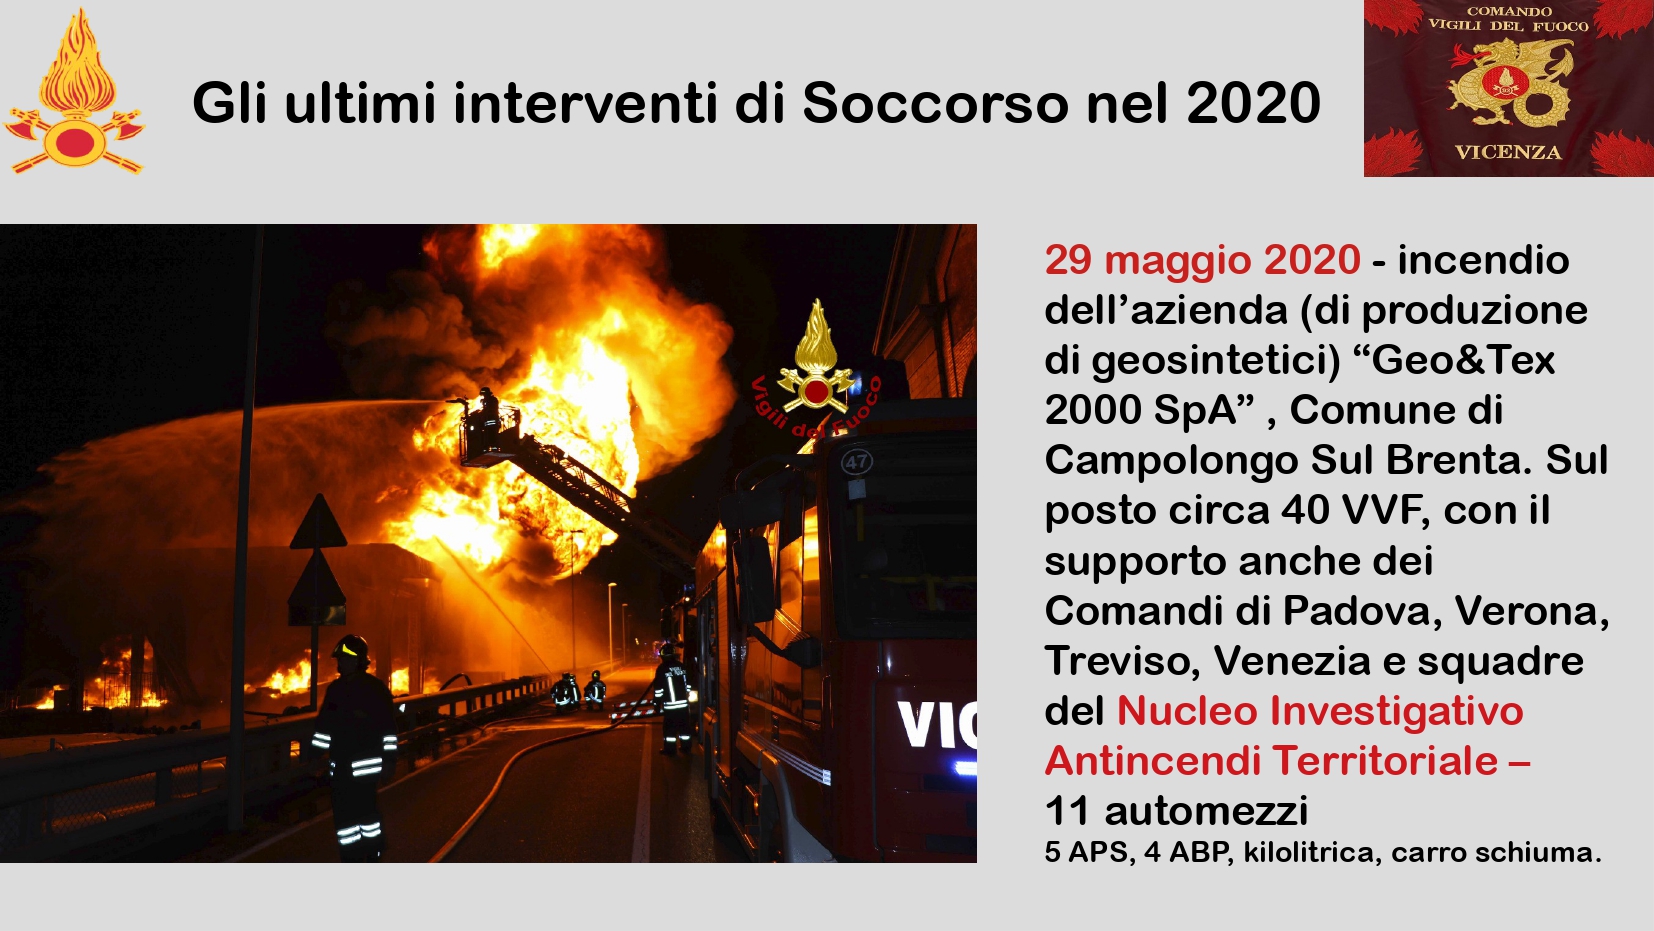 Presentazione_ Comando Vicenza_page-0019